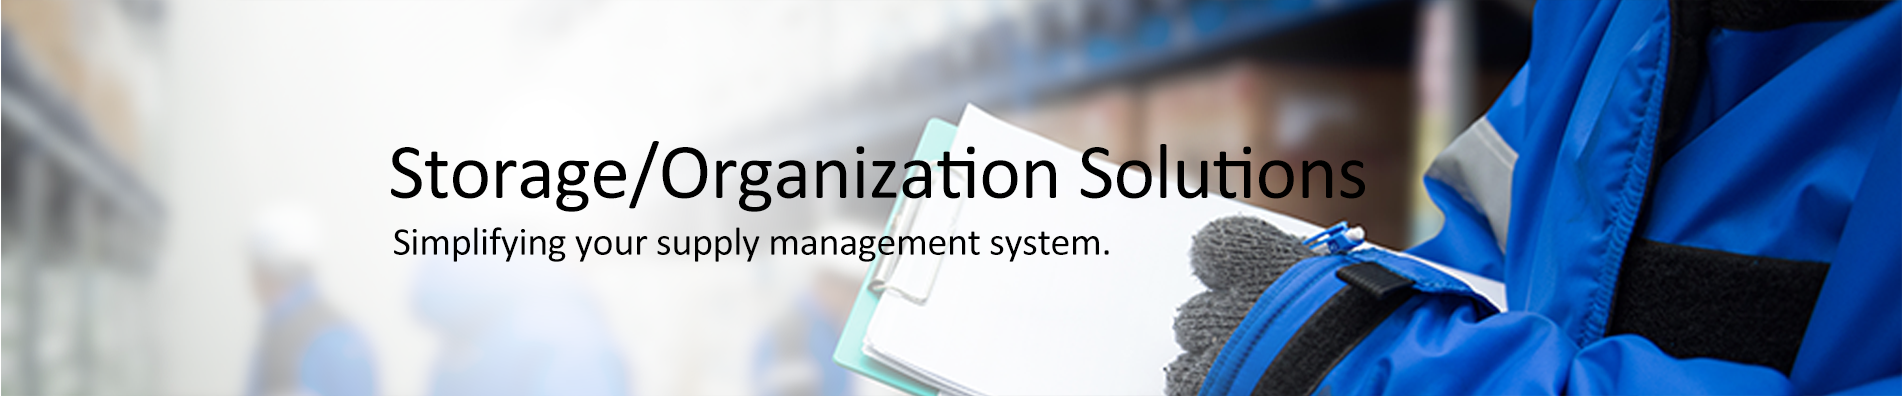 Storage Organization header